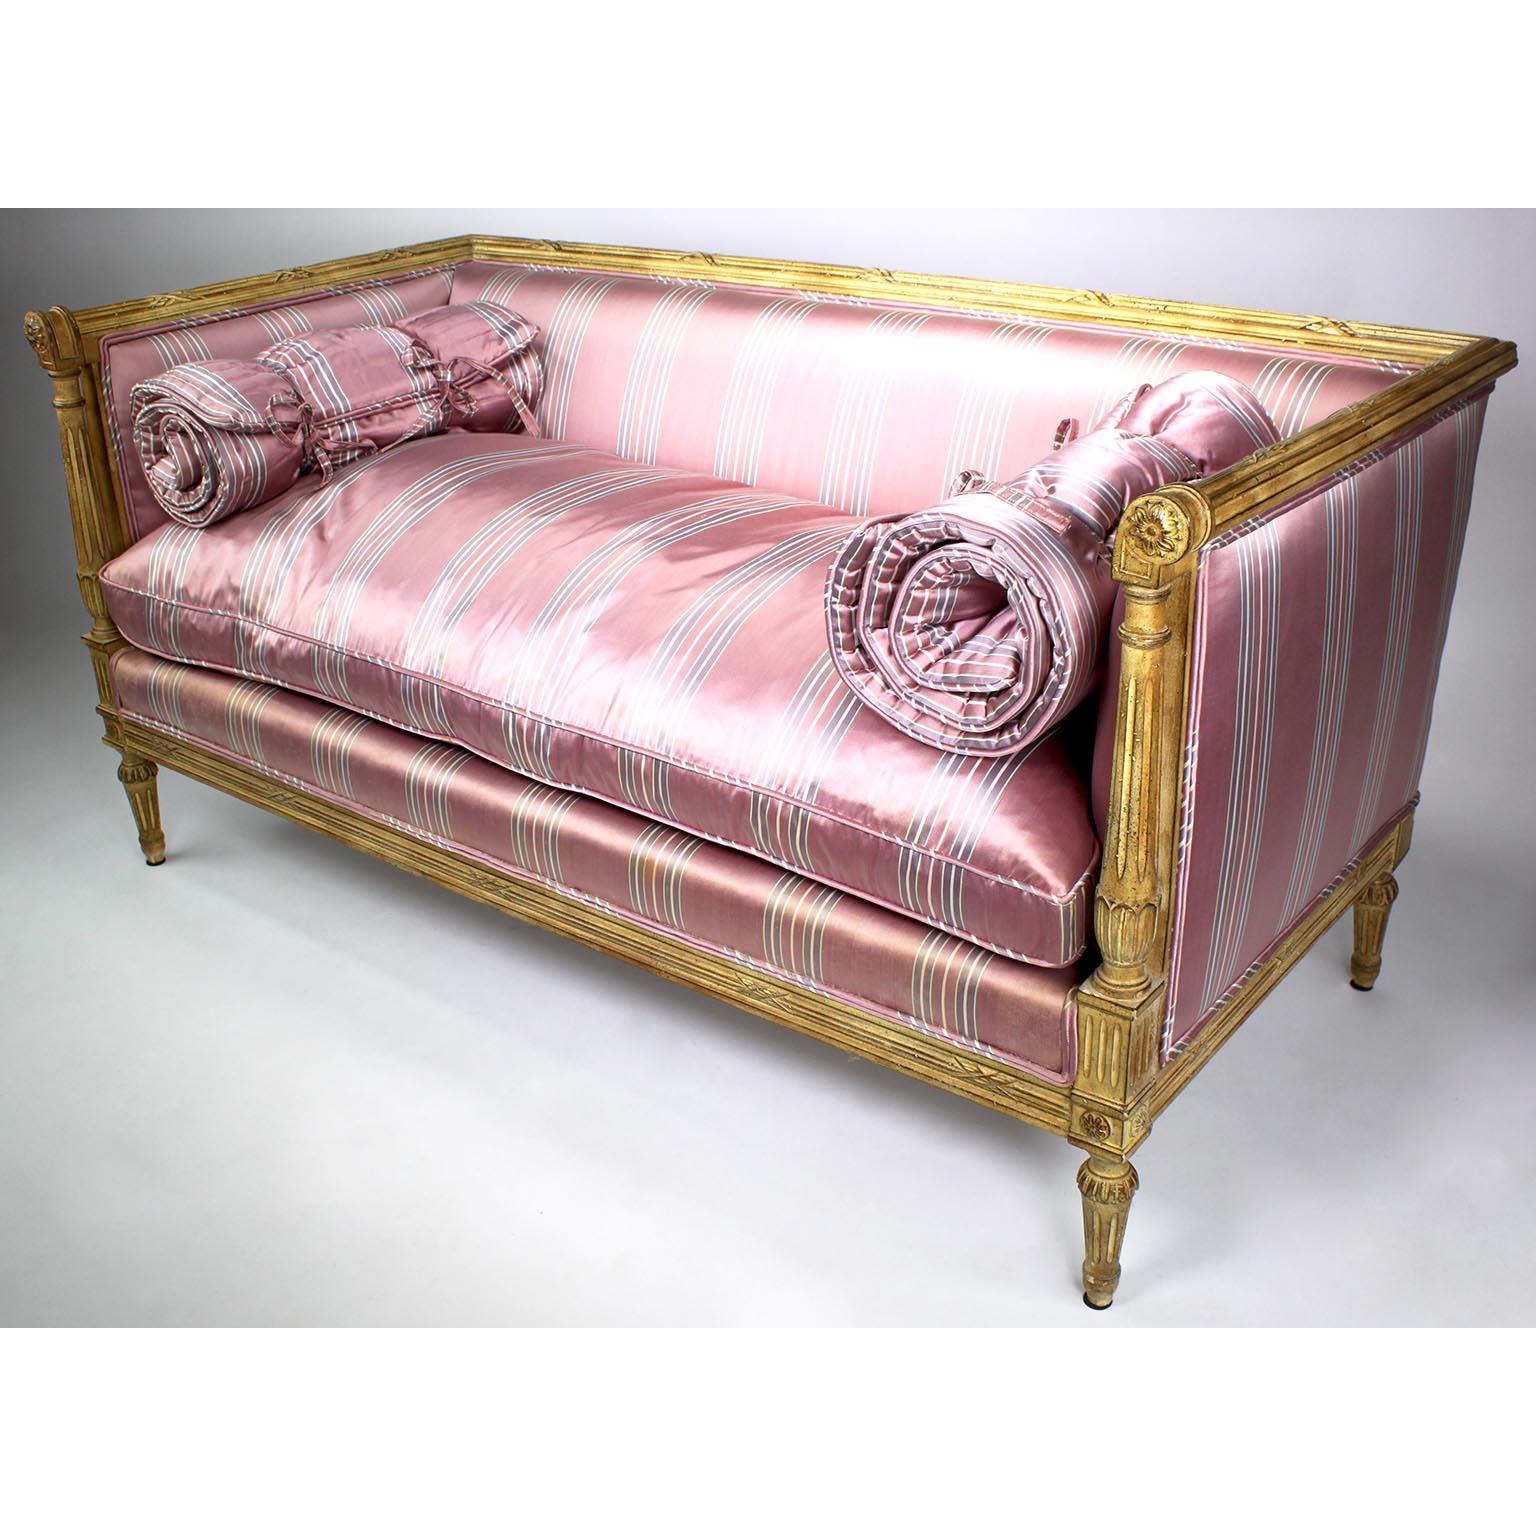 Paire de canapés français de style Louis XVI en bois sculpté laqué crème, probablement de la Maison Jansen. Les Love Seats de forme rectangulaire, chacun avec des accoudoirs sculptés à volutes se terminant par des rosettes, rembourrés sur tous les